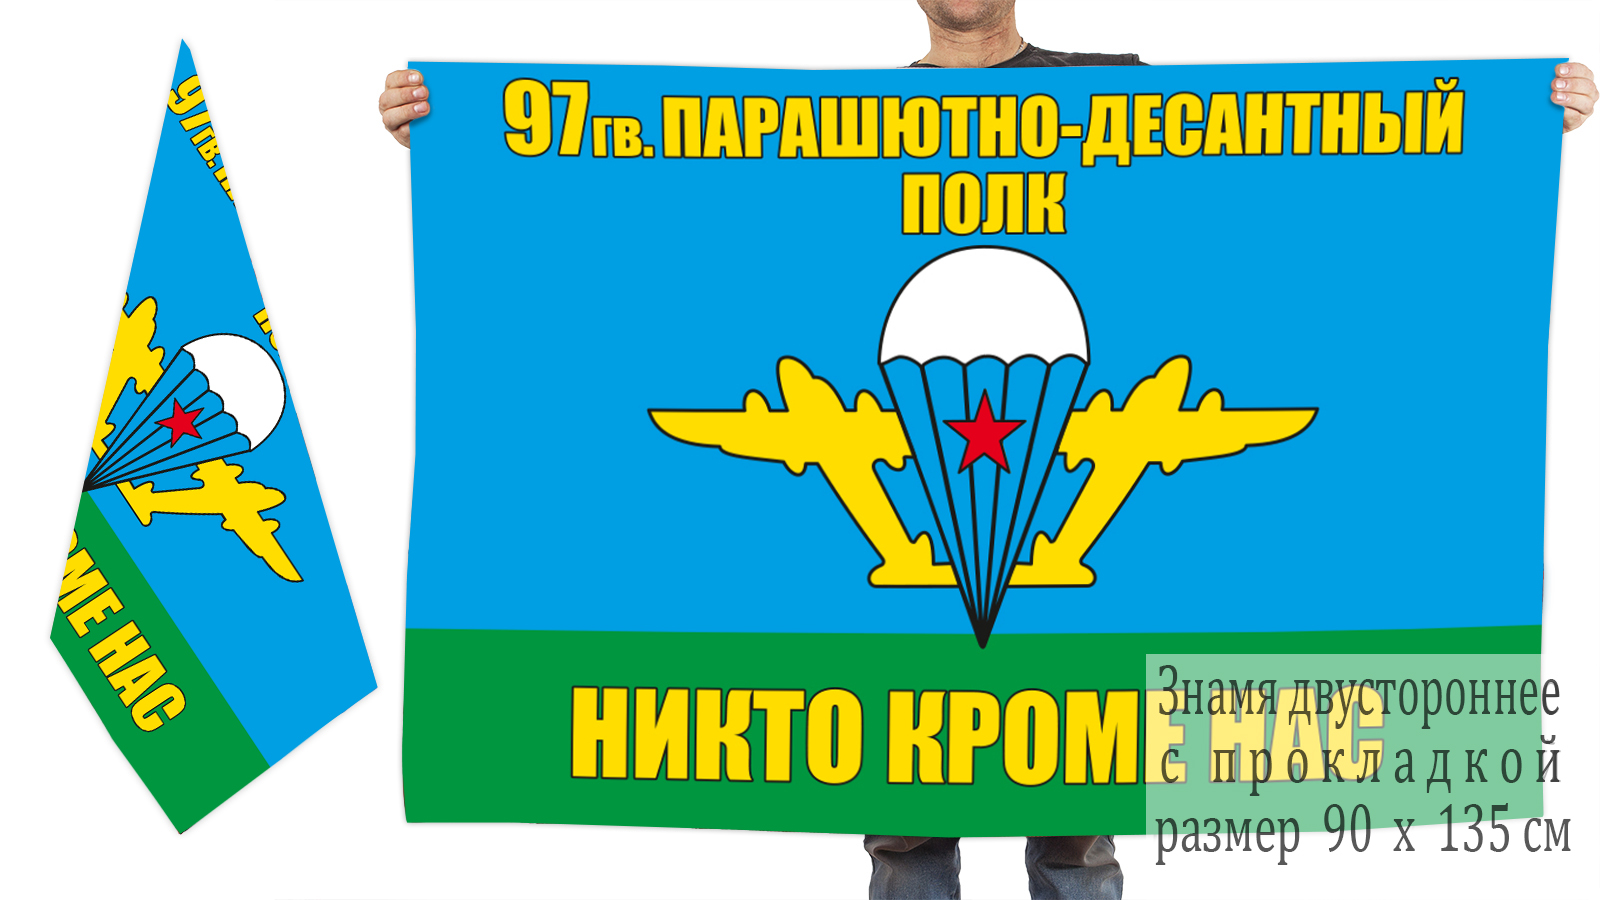 Двусторонний флаг 97 гв. парашютно-десантный полк ВДВ